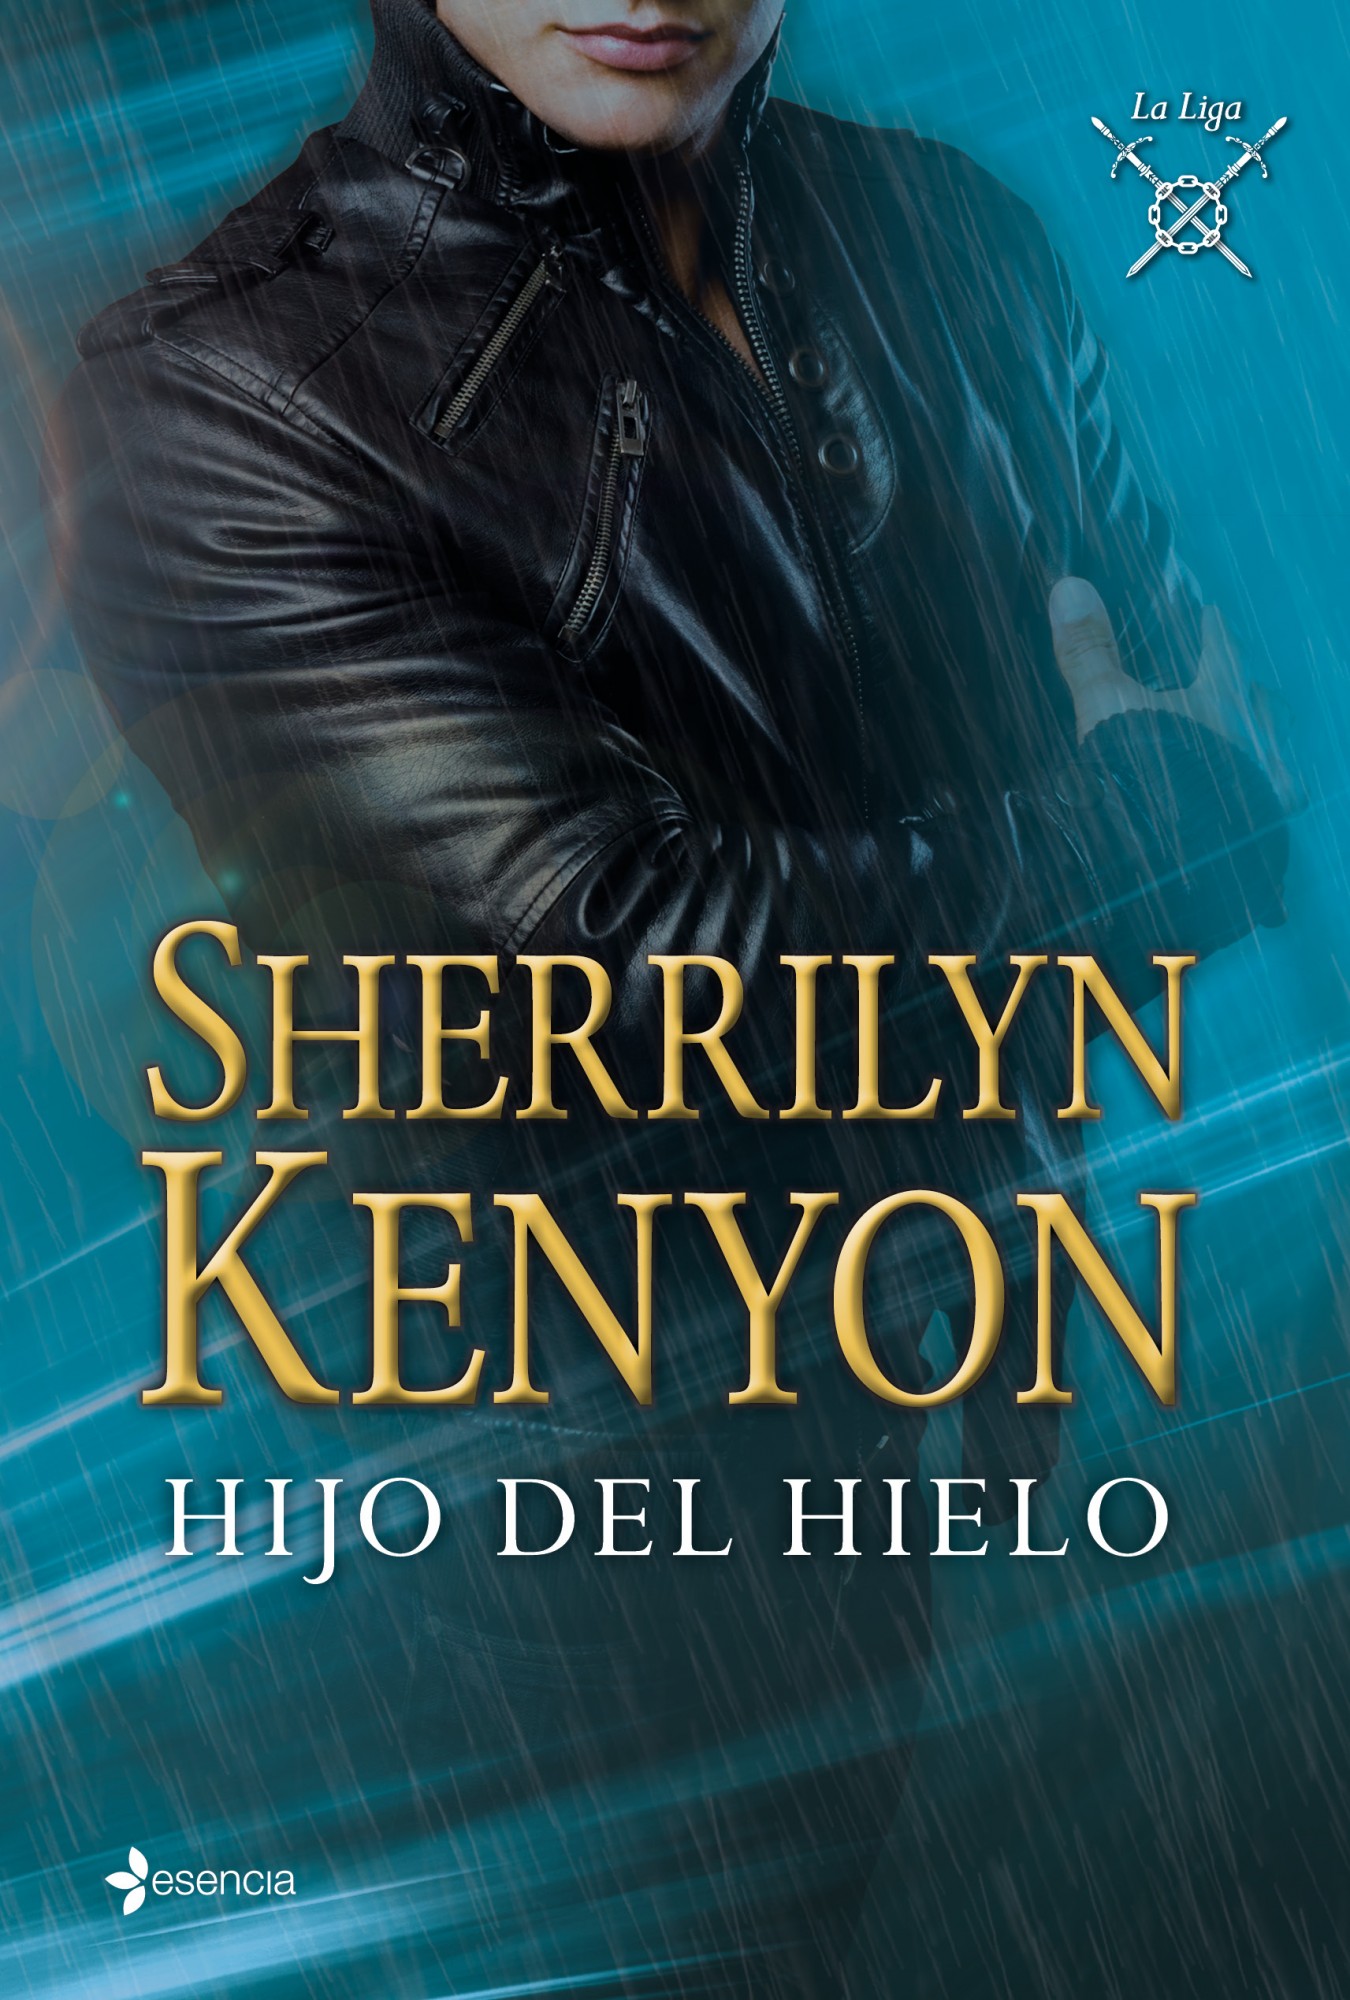 Libro de audio La Liga: Hijo del Hielo [3] – Sherrilyn Kenyon